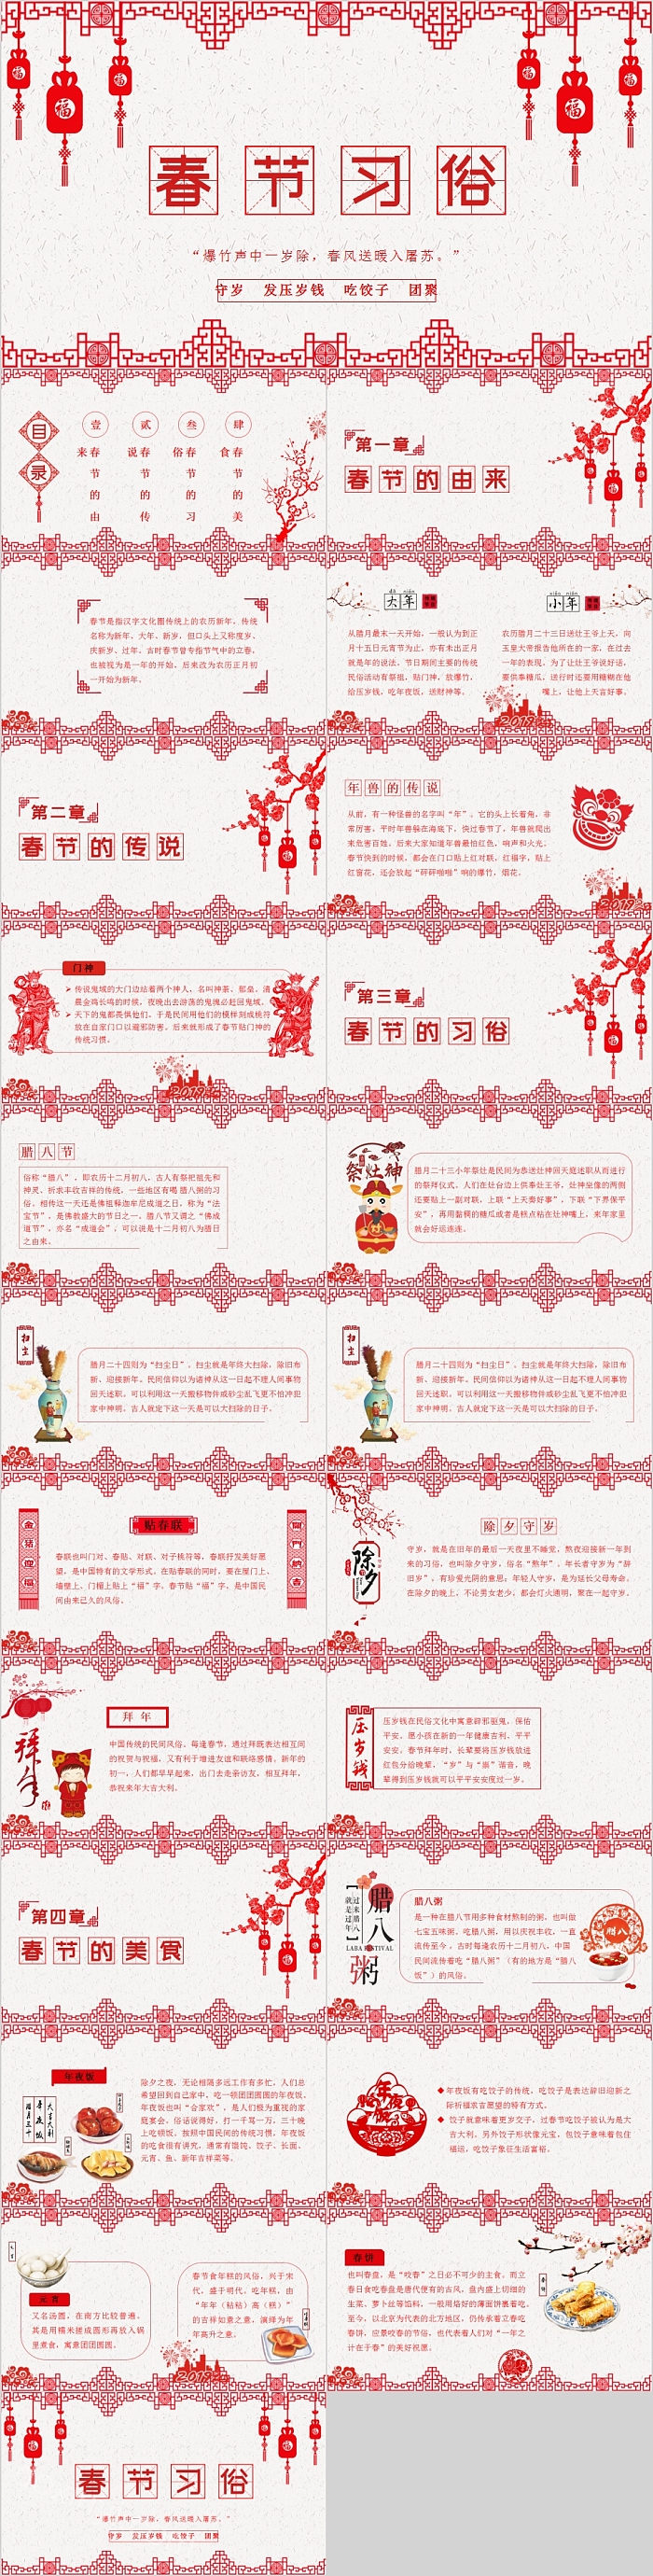 春节习俗传统文化介绍主题班会PPT模板